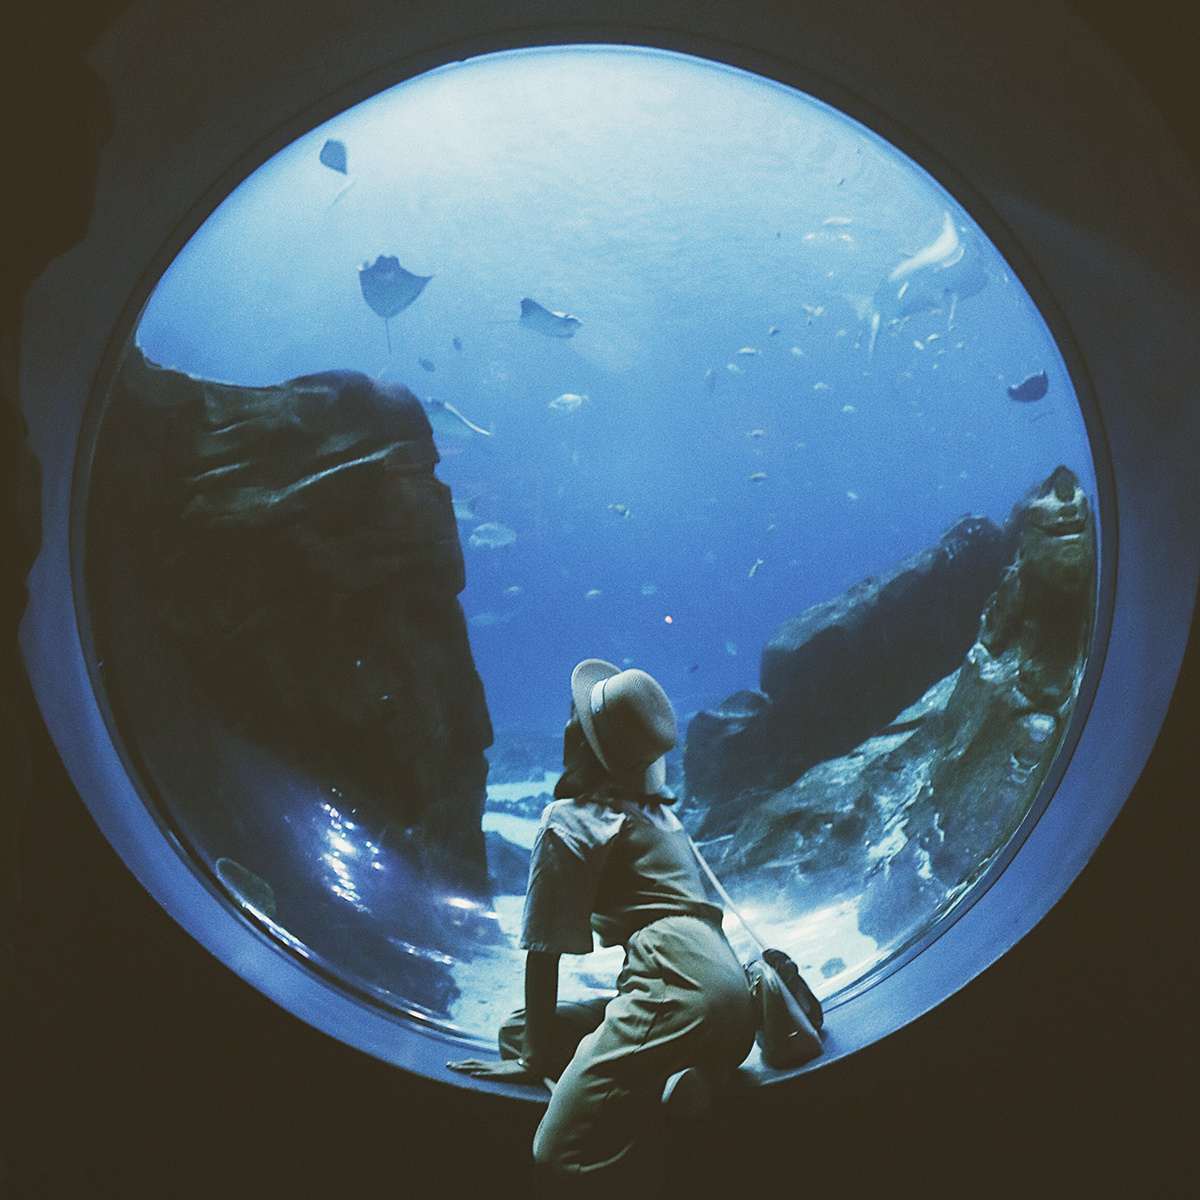 一直覺得水族館像是另一個星球的入口,安靜又溫柔